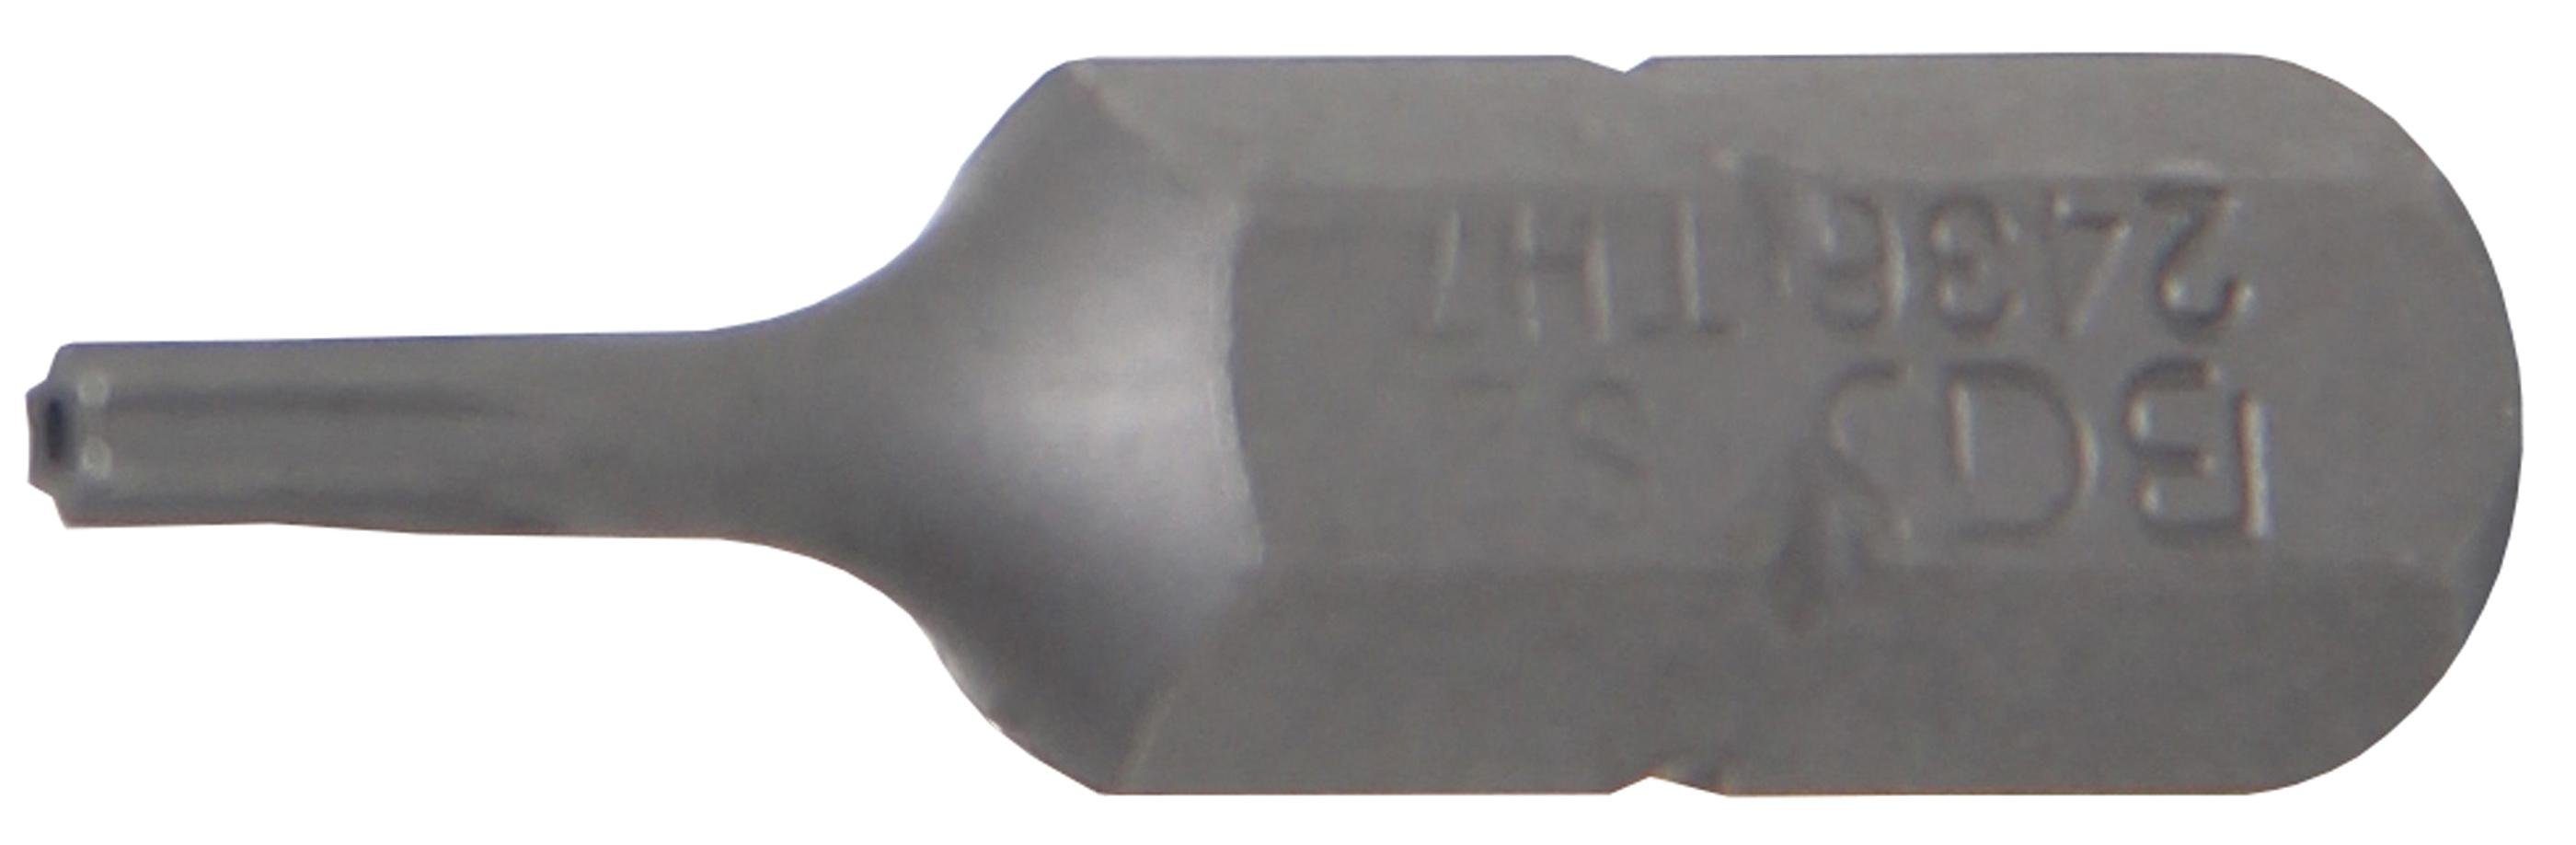 BGS technic Bit-Schraubendreher Bit, Antrieb Außensechskant 6,3 mm (1/4), T-Profil (für Torx) mit Bohrung T7 | Schraubendreher